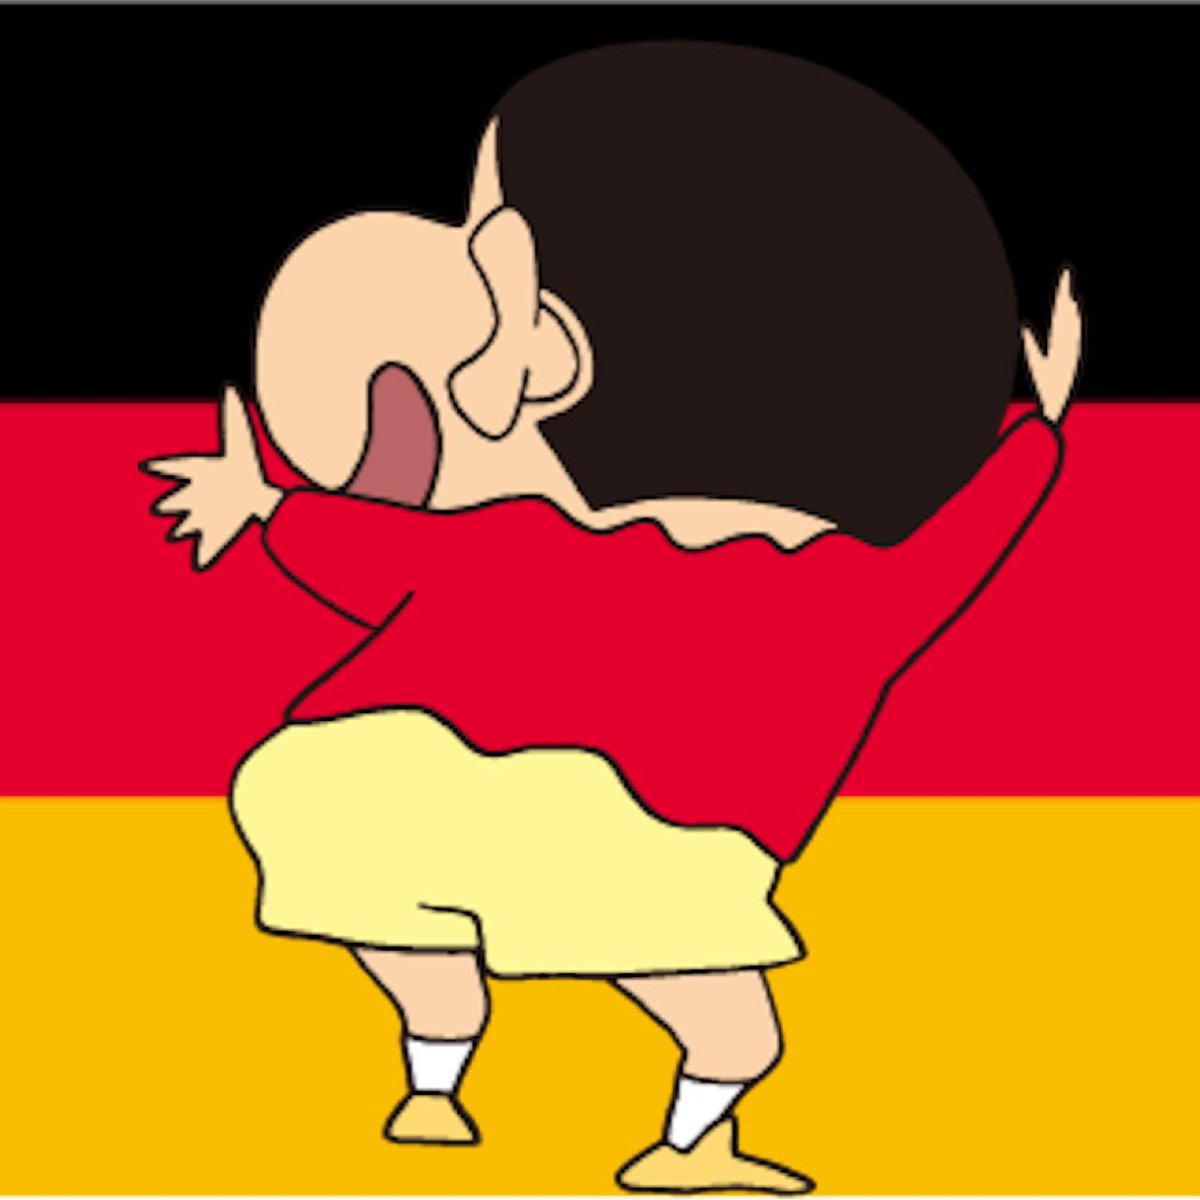 まや twitter પર ドイツの国旗ってクレヨンしんちゃんみたいだなって思ってた